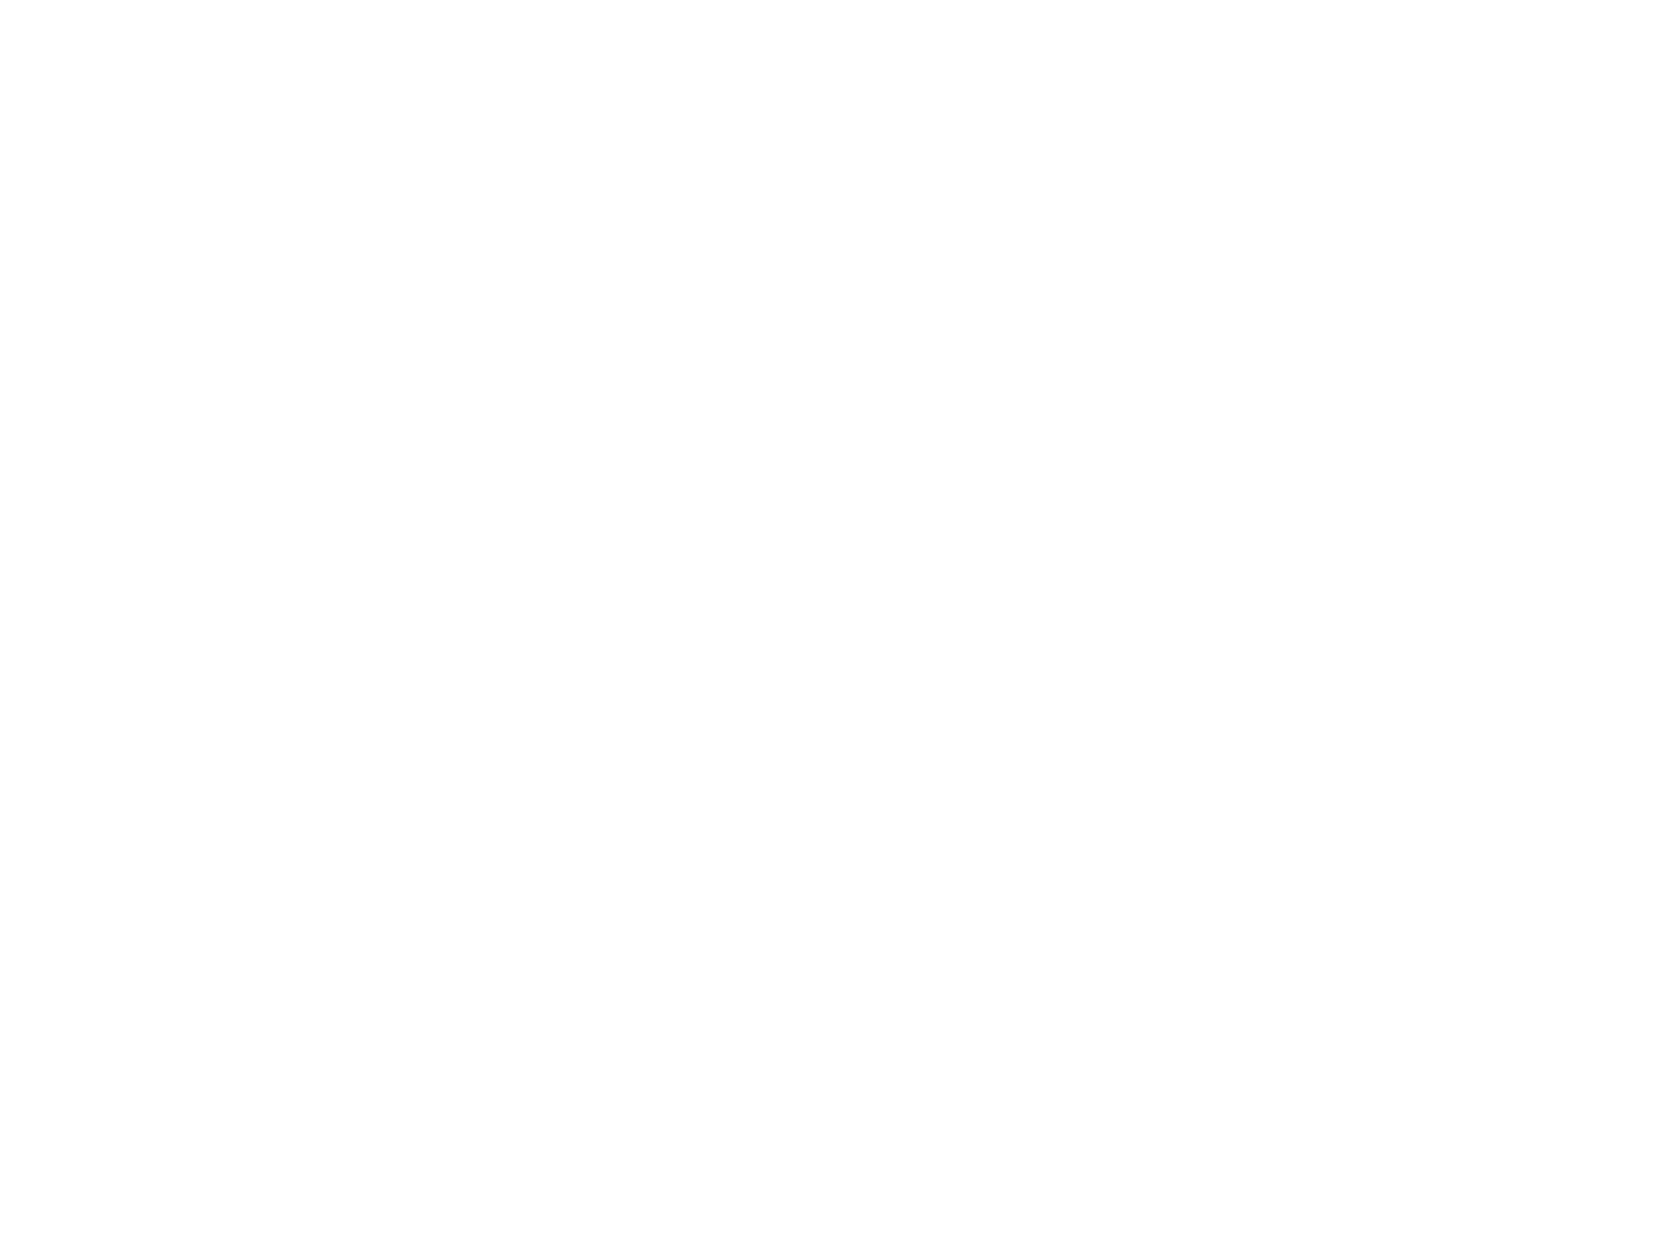 Регниональная выставка Экспо-Сибирь 2018, резидент Гордоского бизнес-инкубатора ООО СОК (производство чулочно-носочных изделий), 2018 год